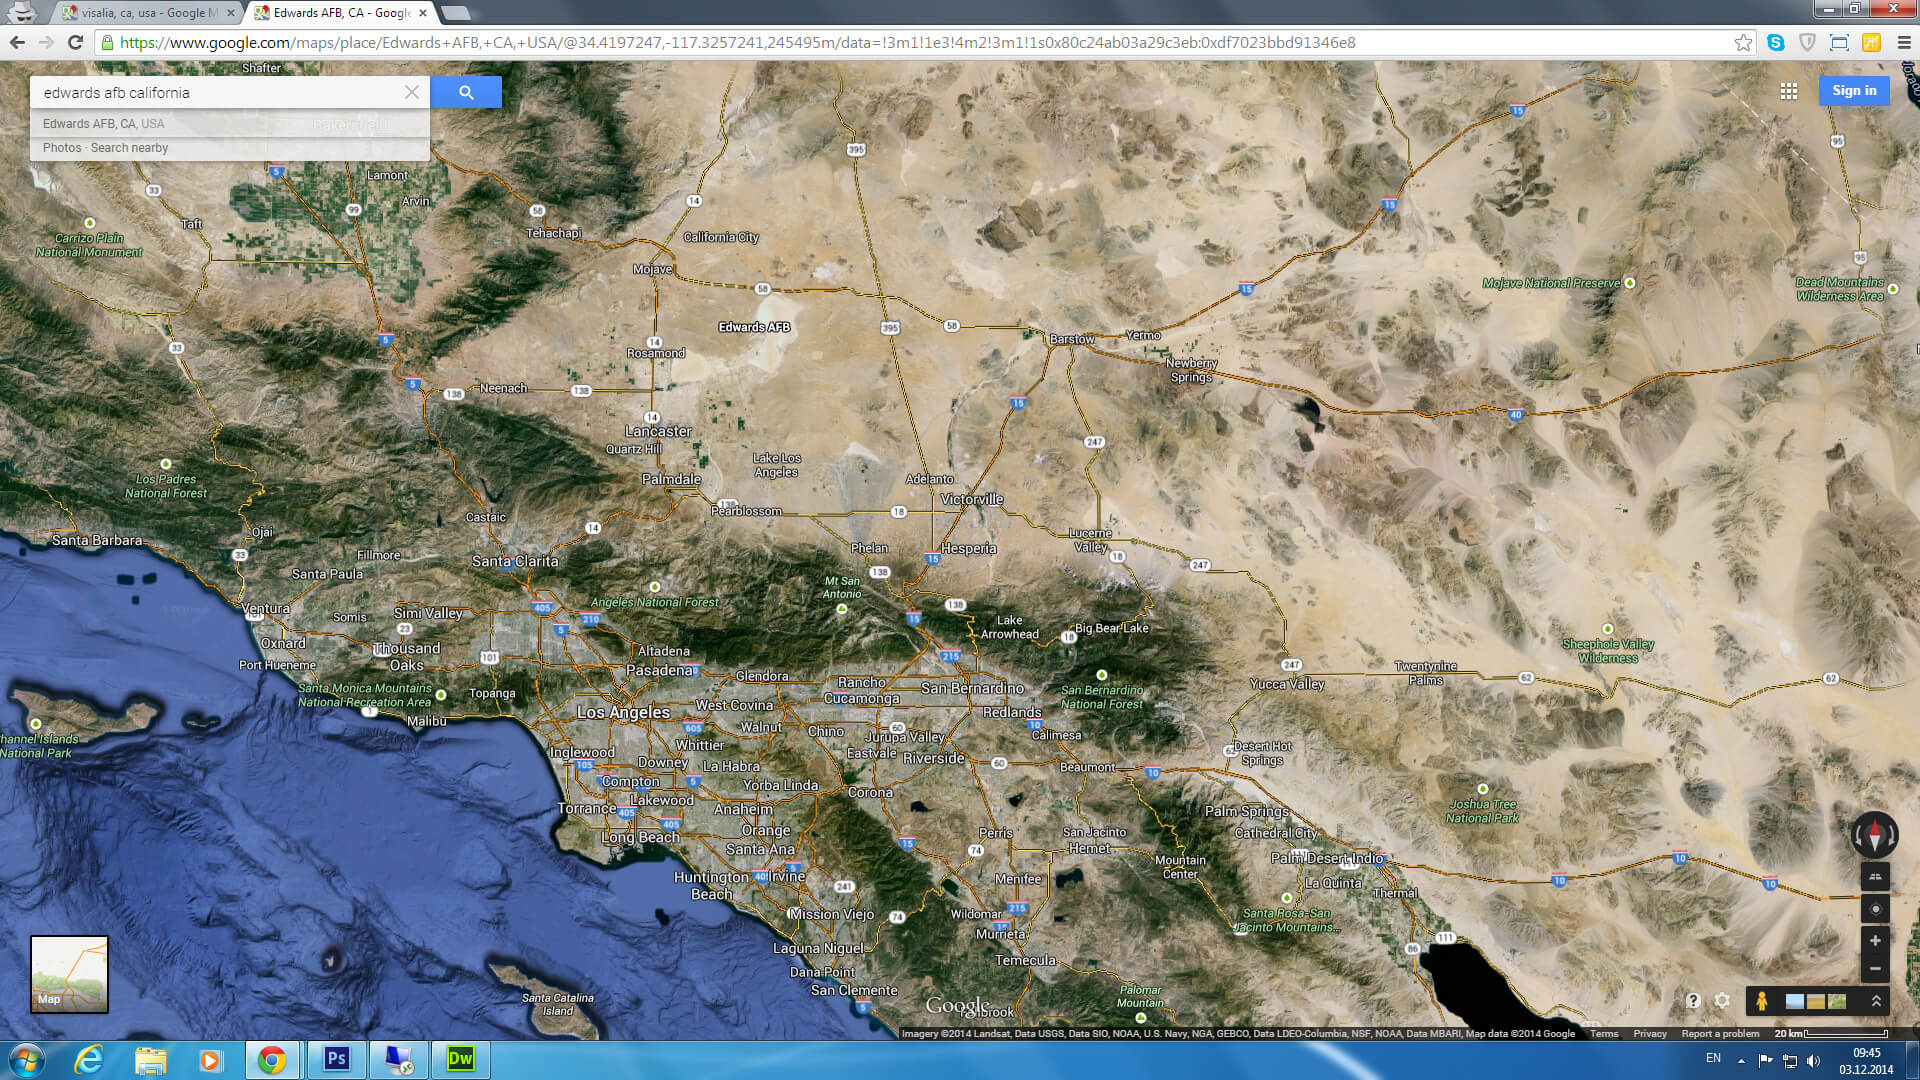 edwards afb map california us satellite